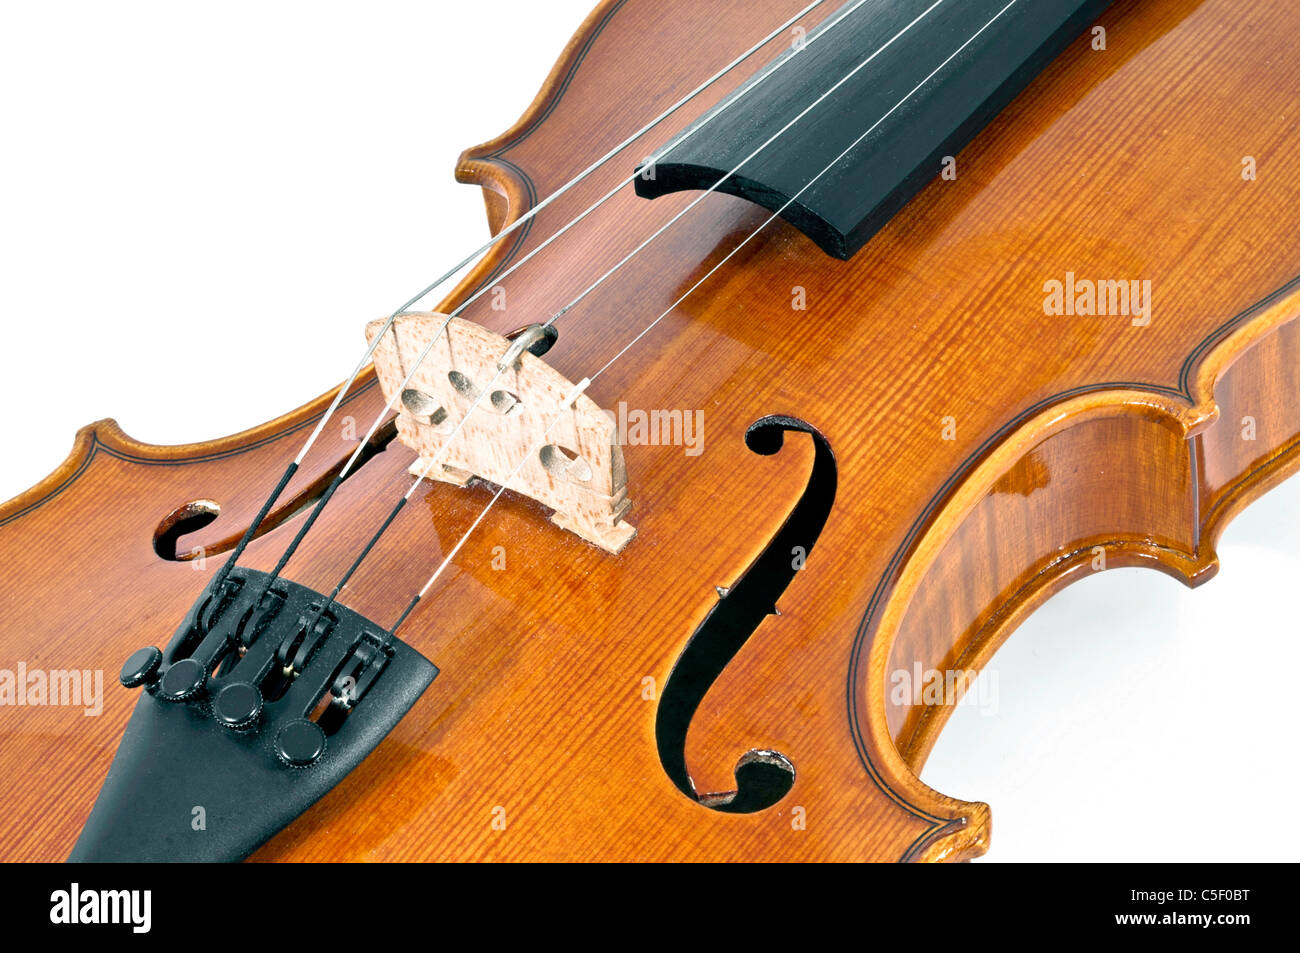 En bois italien détails corde de violon sur fond blanc Banque D'Images